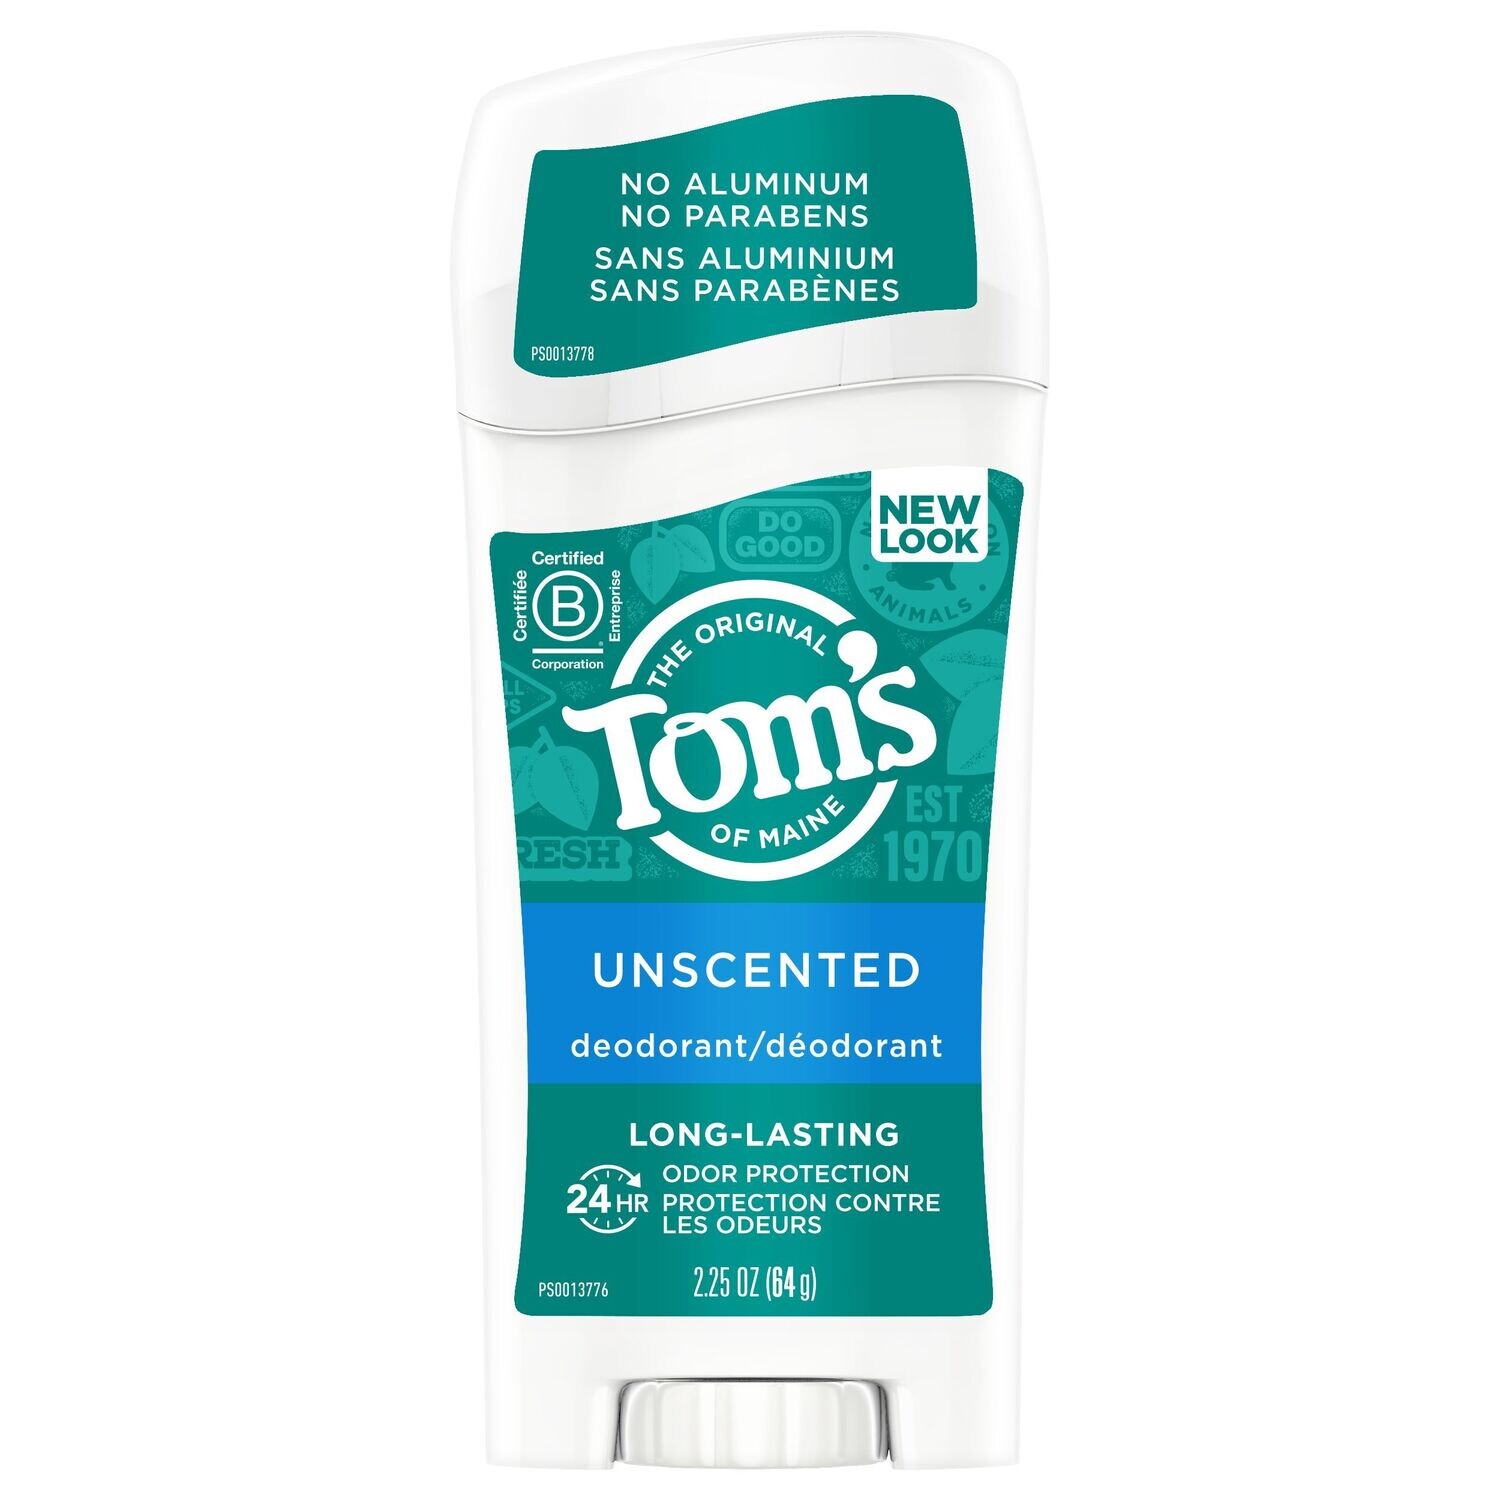 Tom's of Maine Unscented deodorant 2.25oz